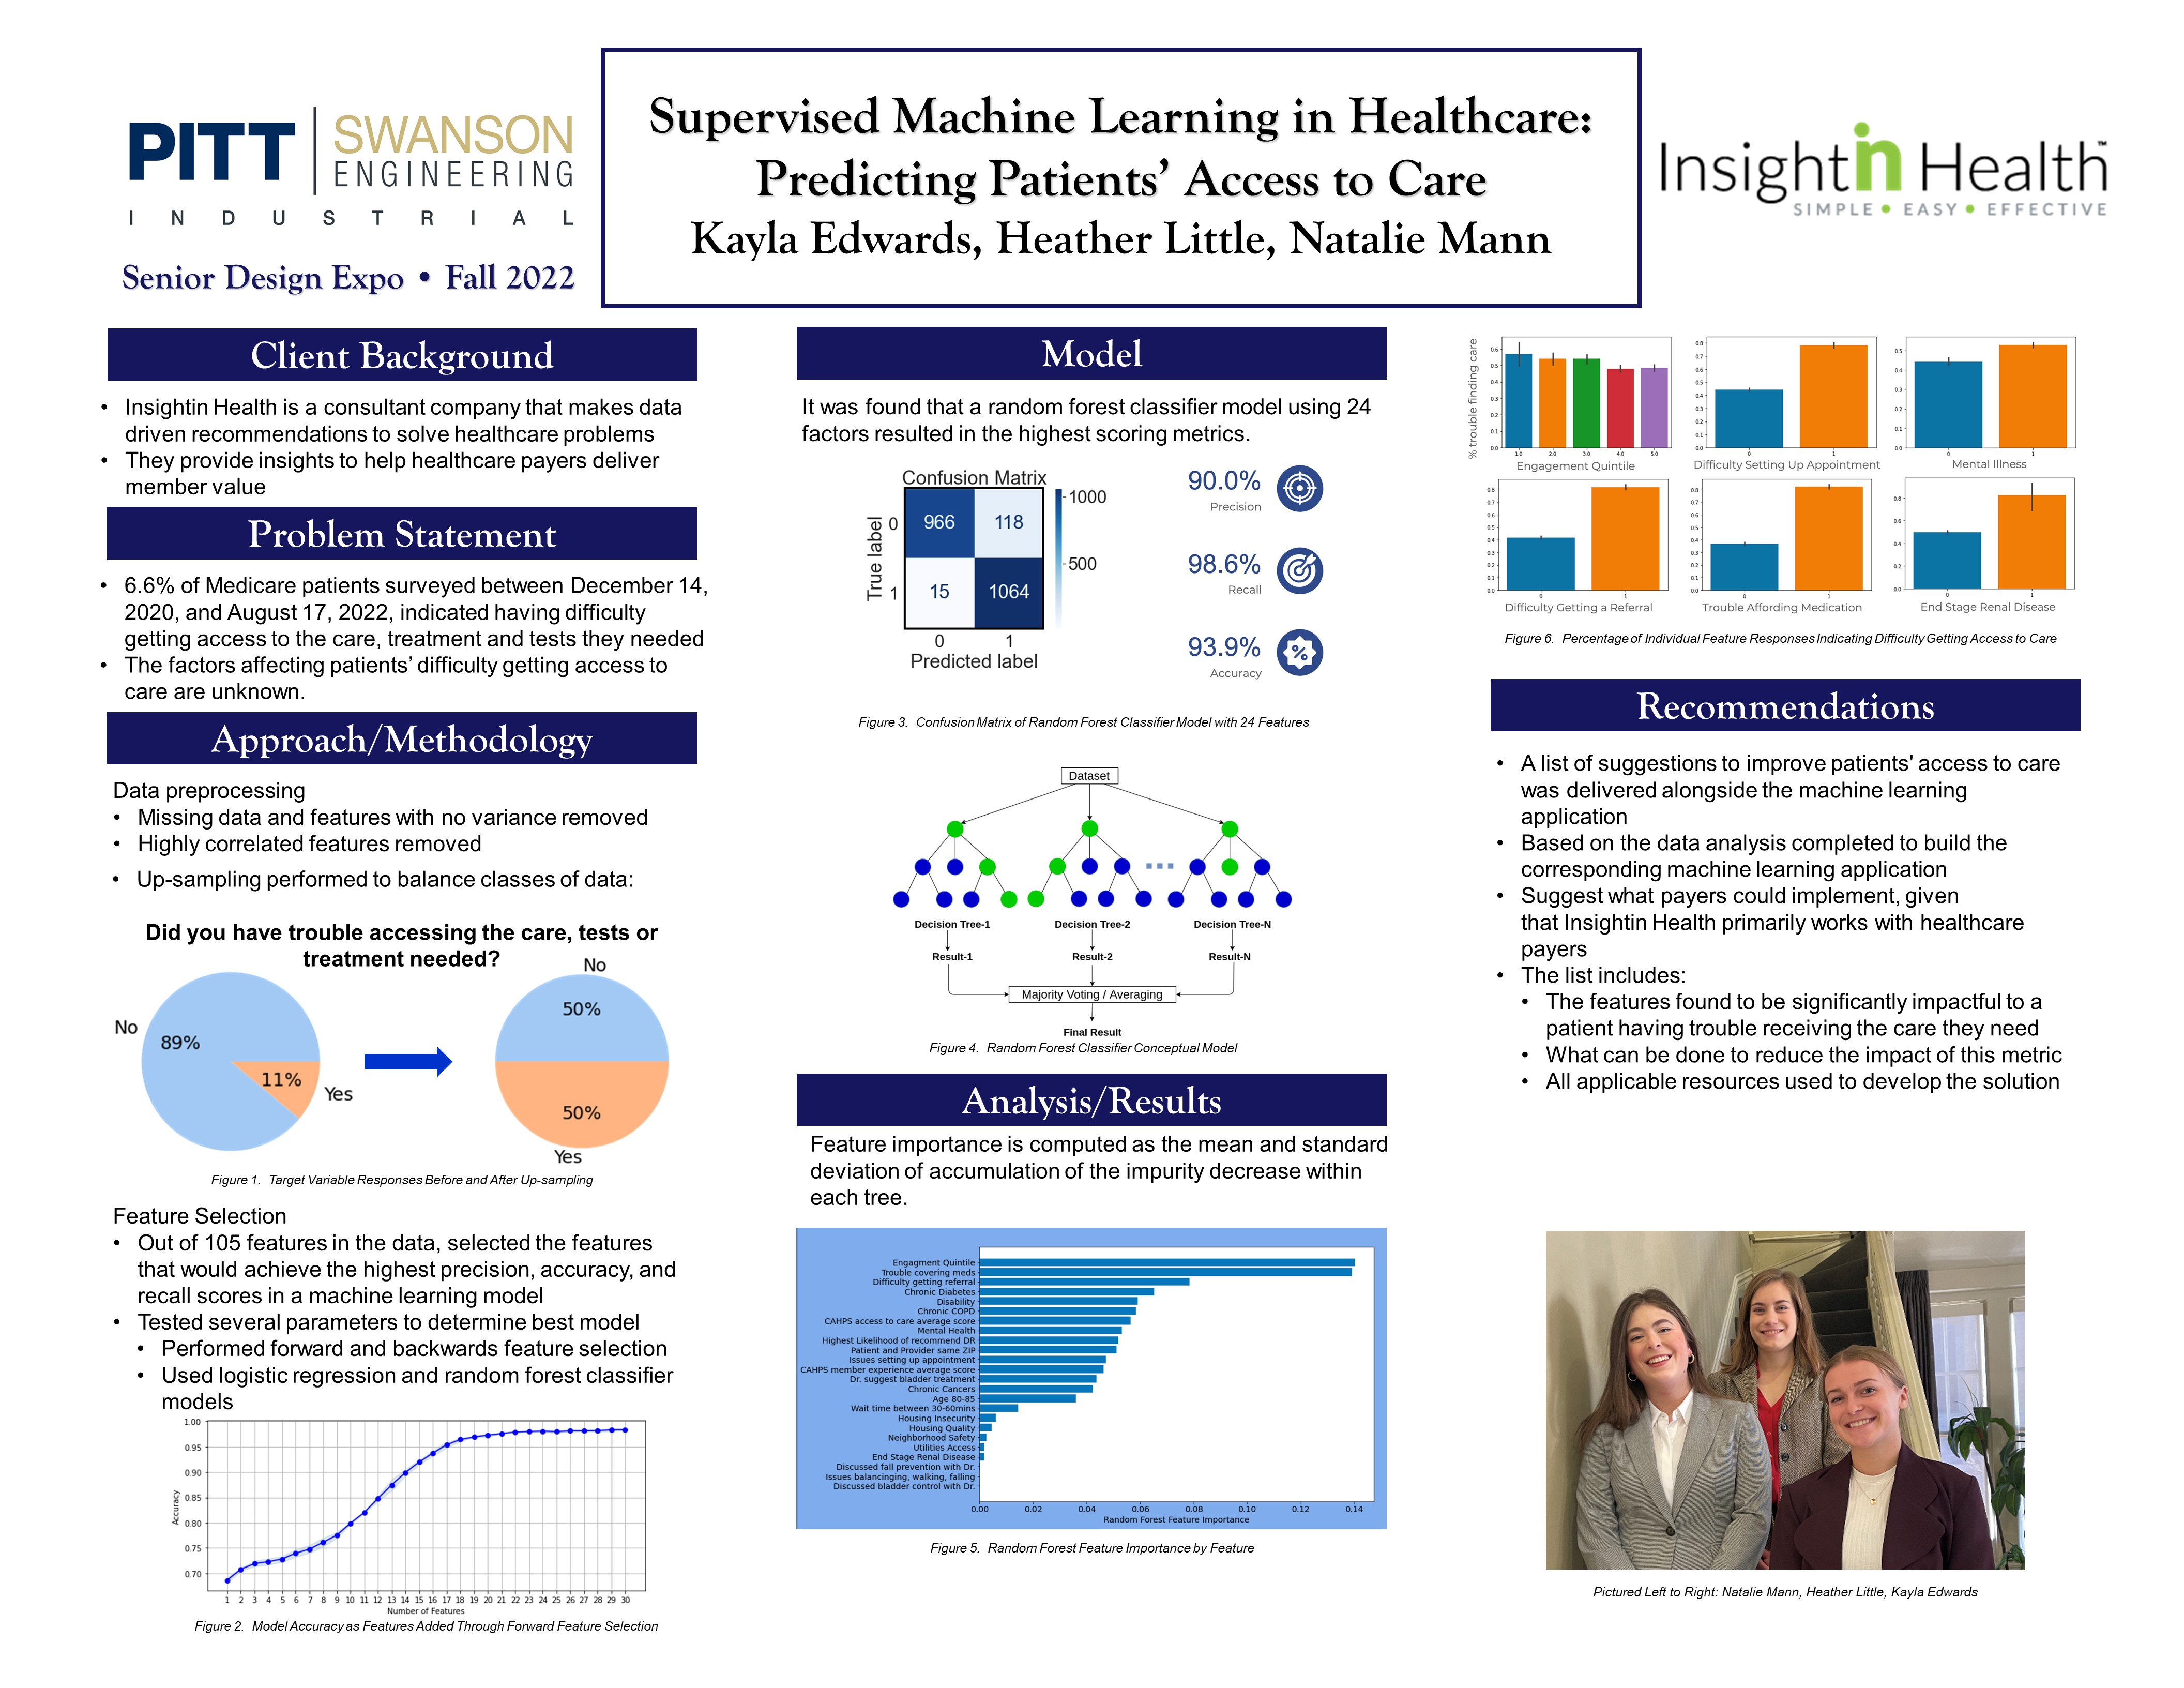 Supervised Machine Learning in Healthcare: Predicting Patients’ Access to Care research poster